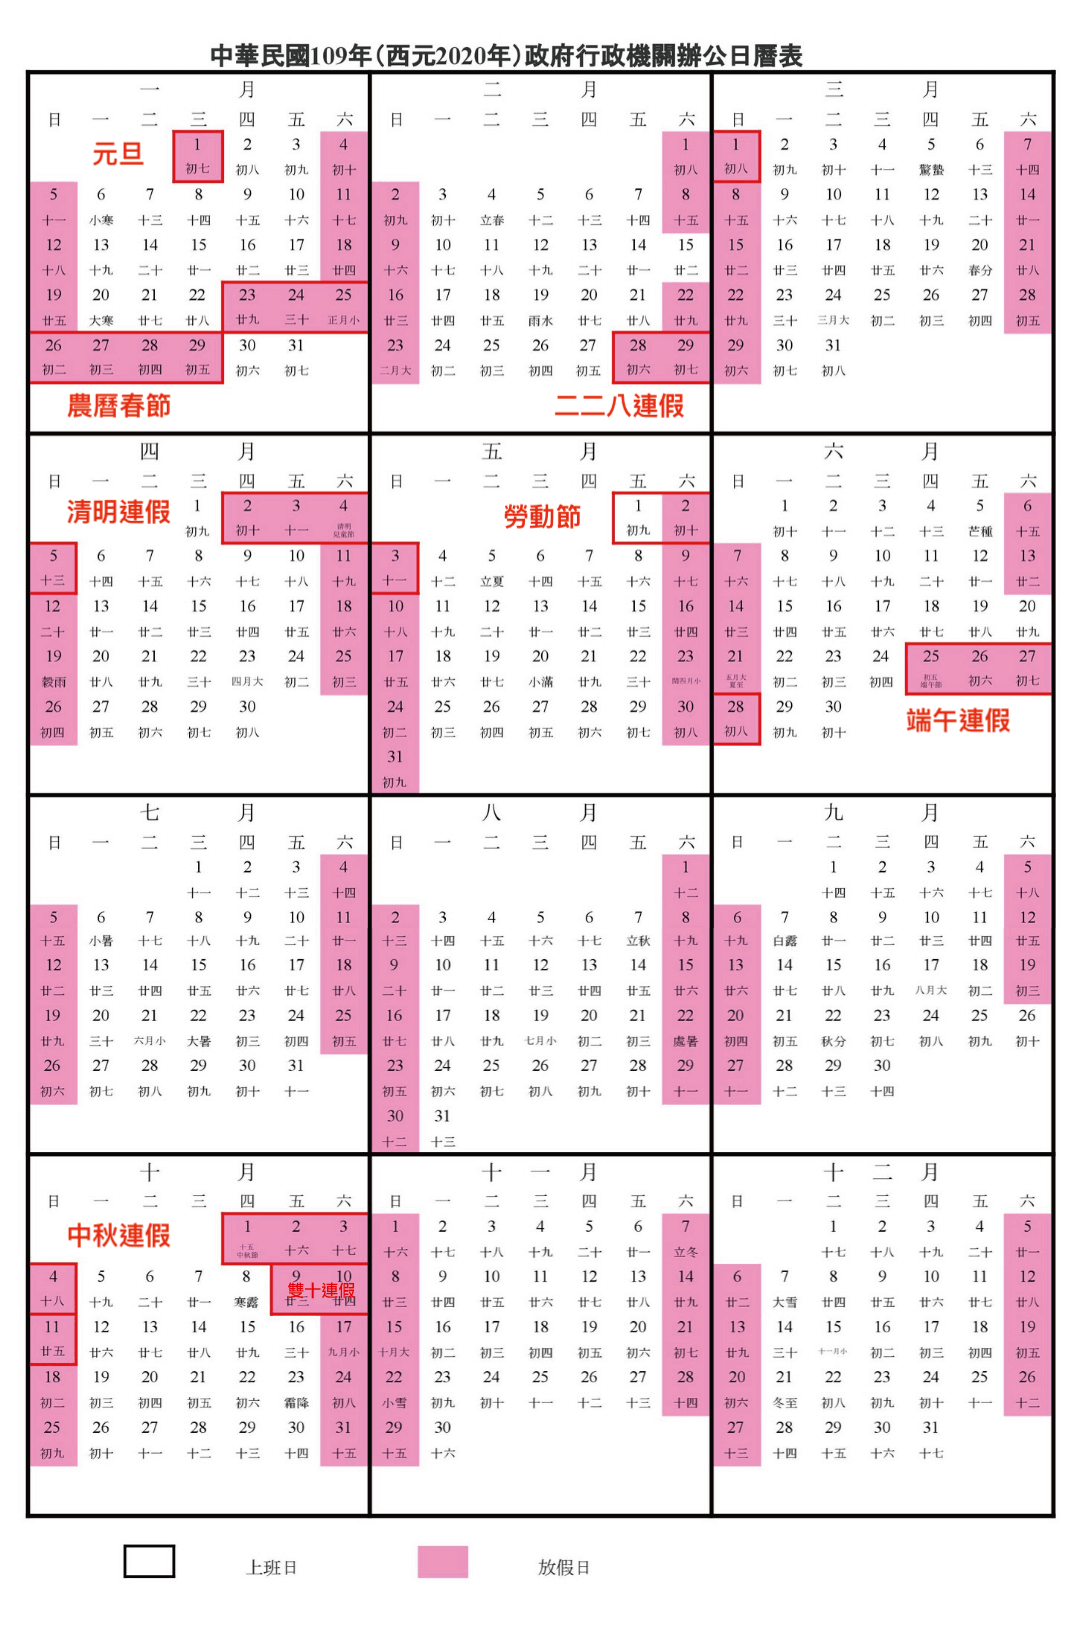 【2020行事曆】, 人事行政局, 109年行事曆